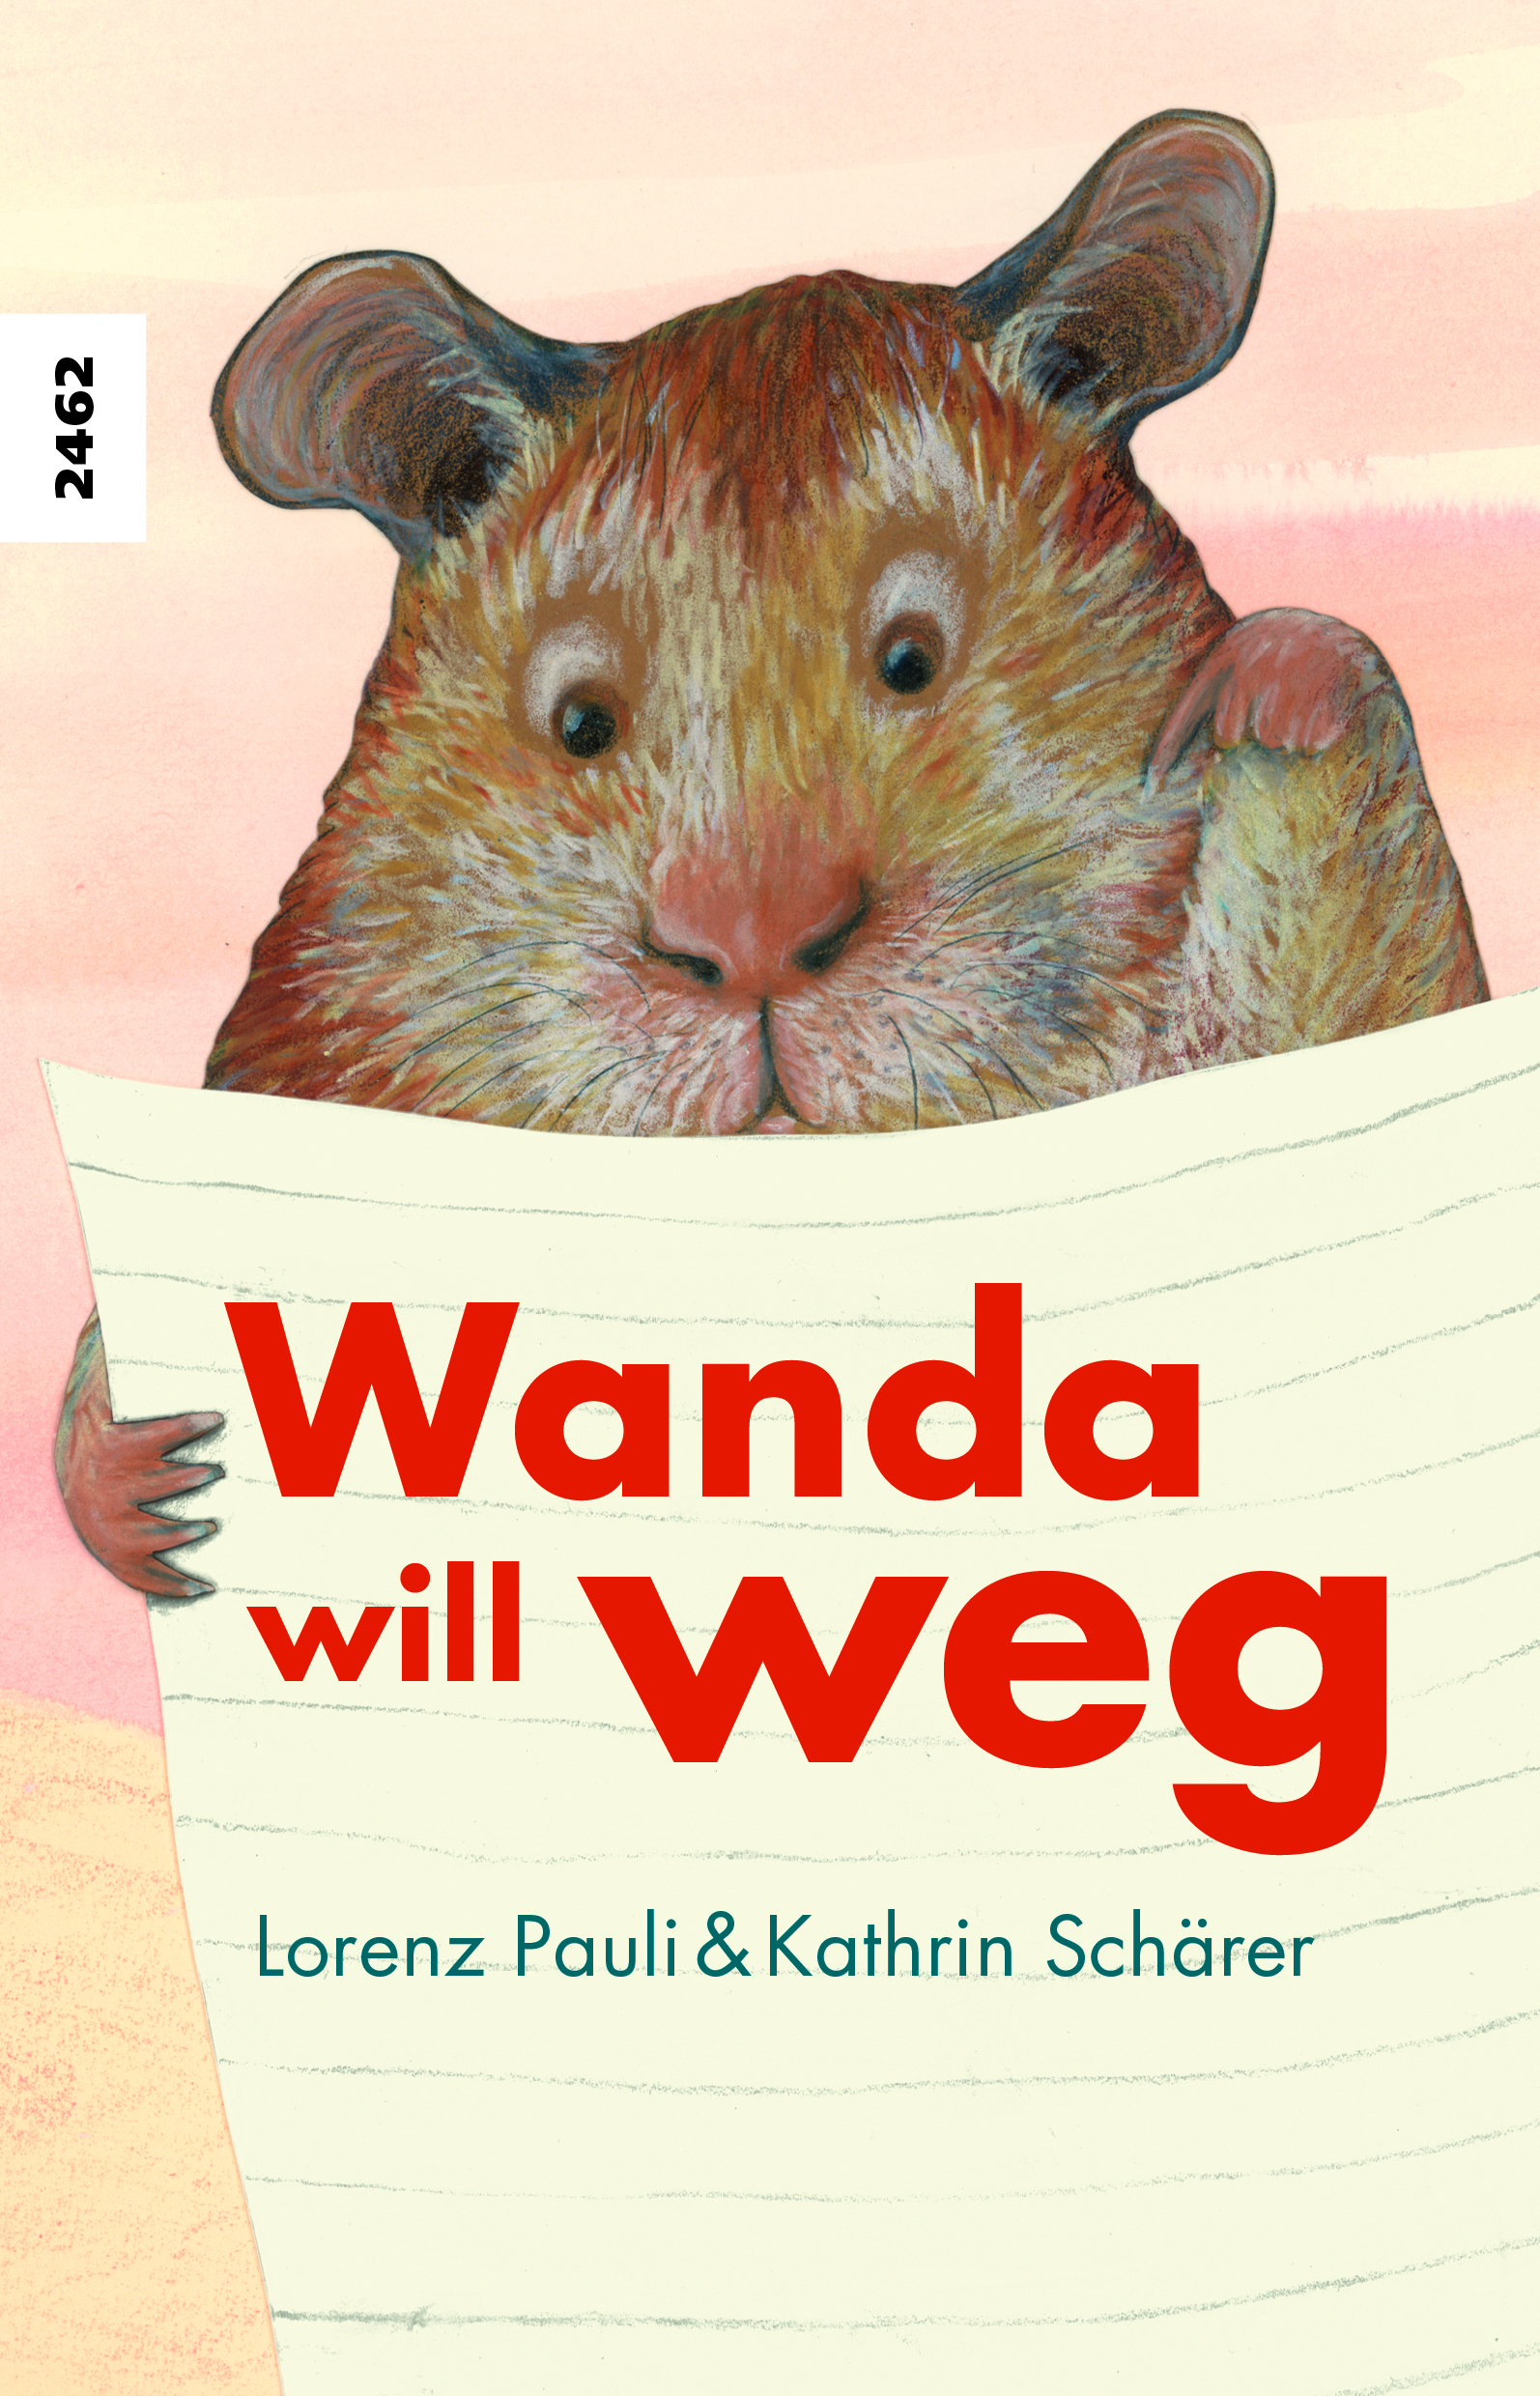 Wanda will weg, ein Kinderbuch von Lorenz Pauli, Illustration von Kathrin Schaerer, SJW Verlag, Erstlesetext